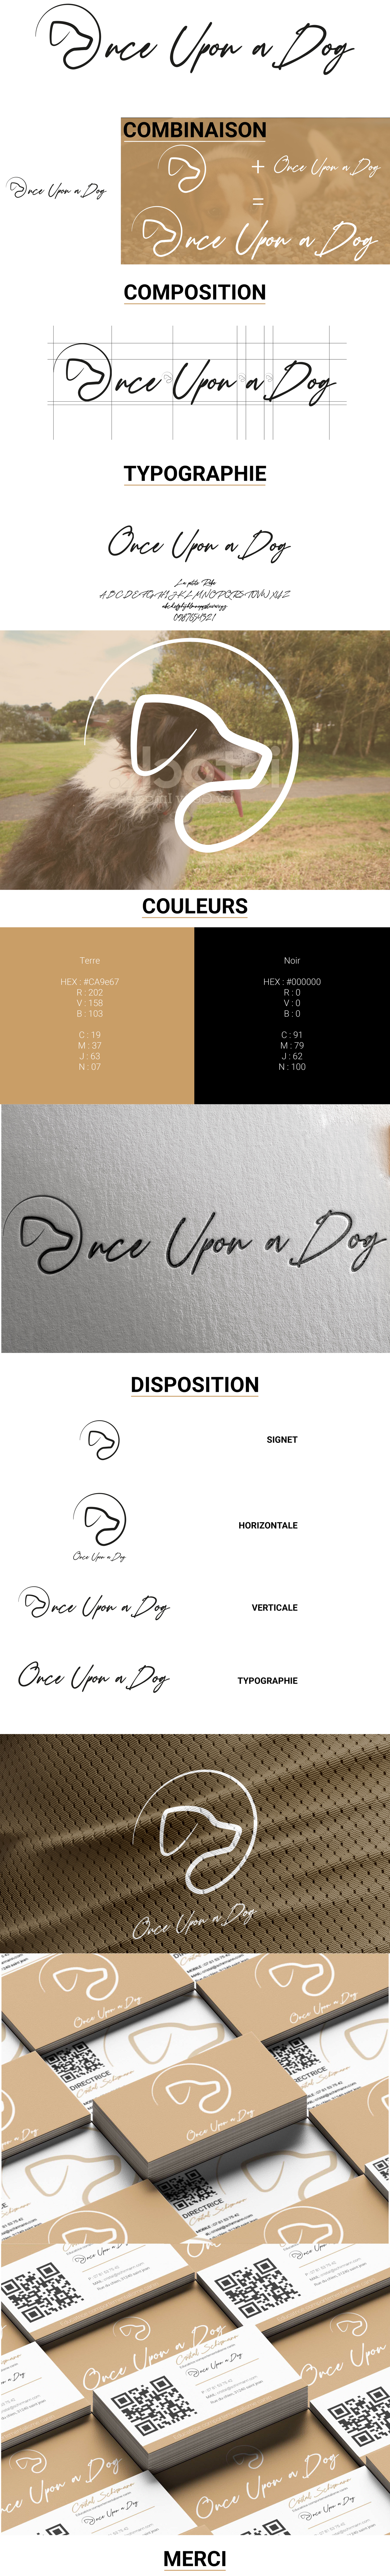 Identité graphique du logo Once Upon a Dog réalisé par Etienne Schirmann Designer graphique Directeur Artistique freelance